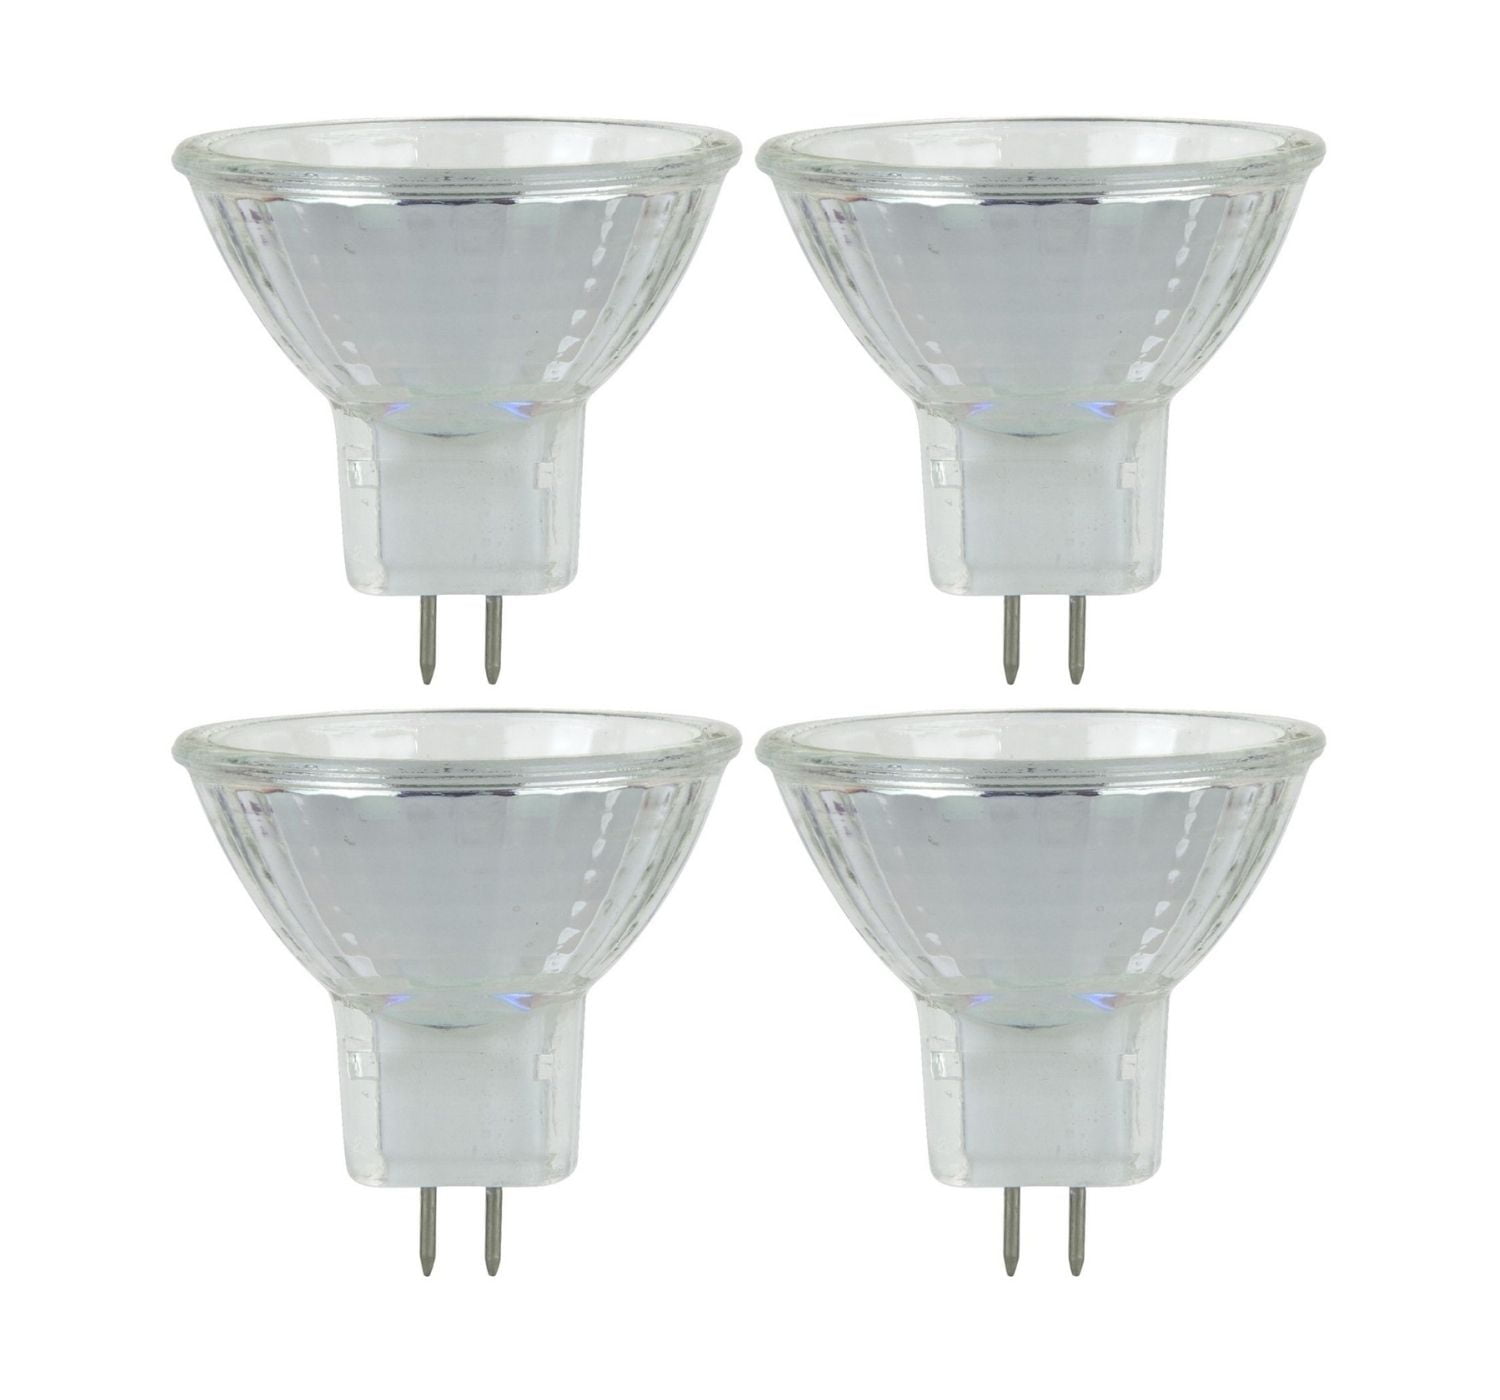 Pack of 5x MR11 12v LED 12 LEDs 10w-20w Halogen Warm White